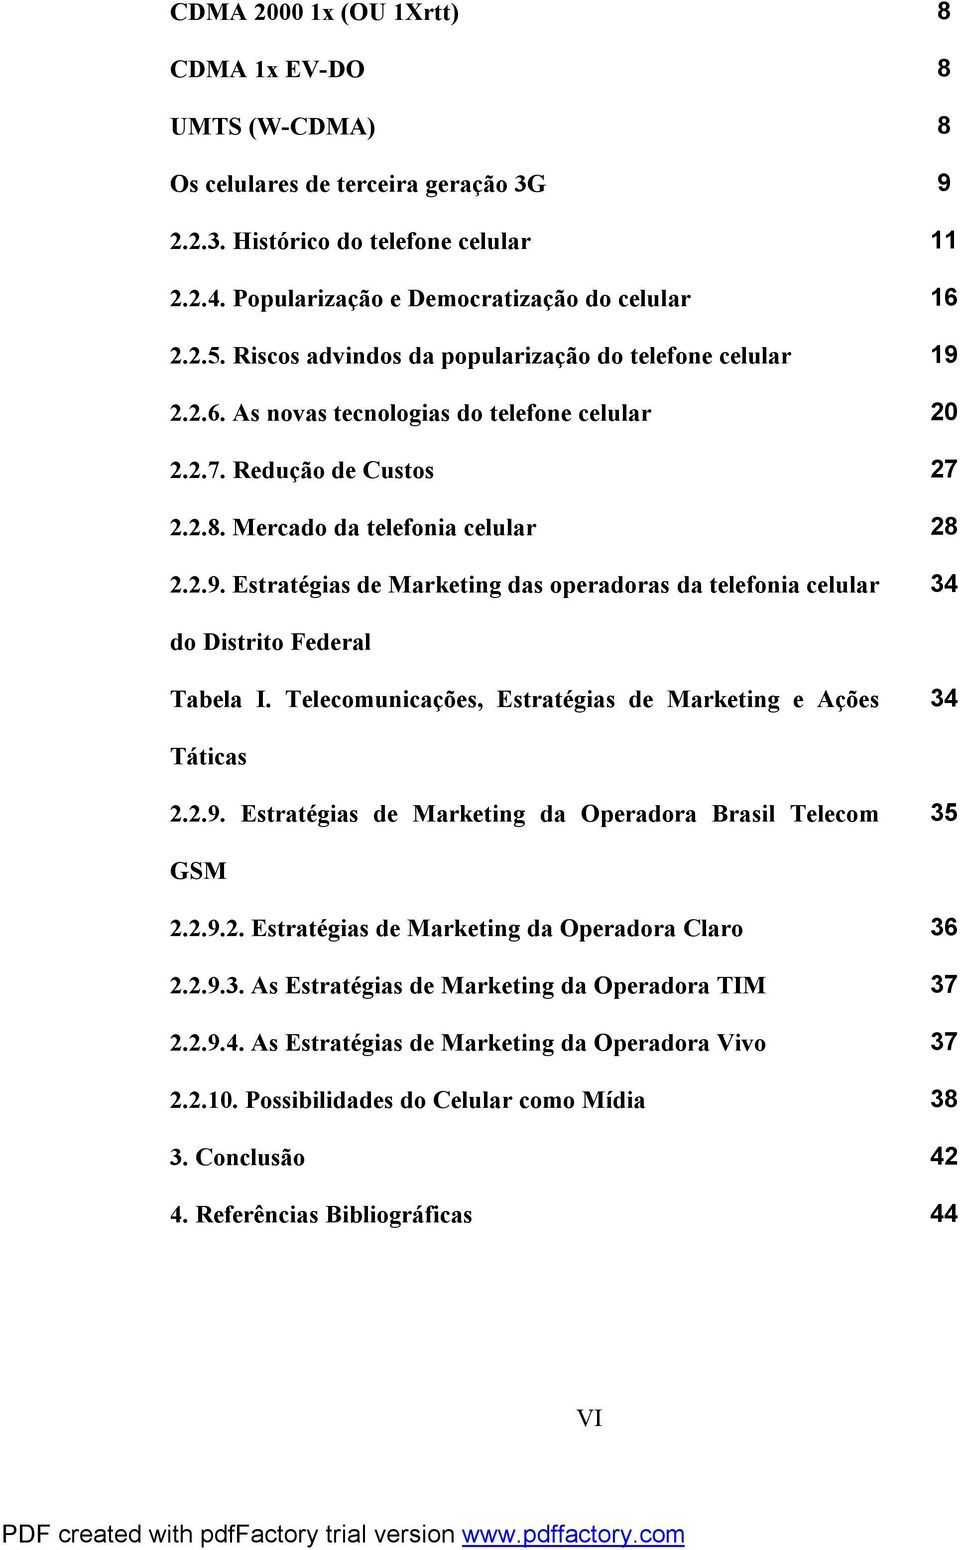 Telecomunicações, Estratégias de Marketing e Ações 34 Táticas 2.2.9. Estratégias de Marketing da Operadora Brasil Telecom 35 GSM 2.2.9.2. Estratégias de Marketing da Operadora Claro 36 2.2.9.3. As Estratégias de Marketing da Operadora TIM 37 2.